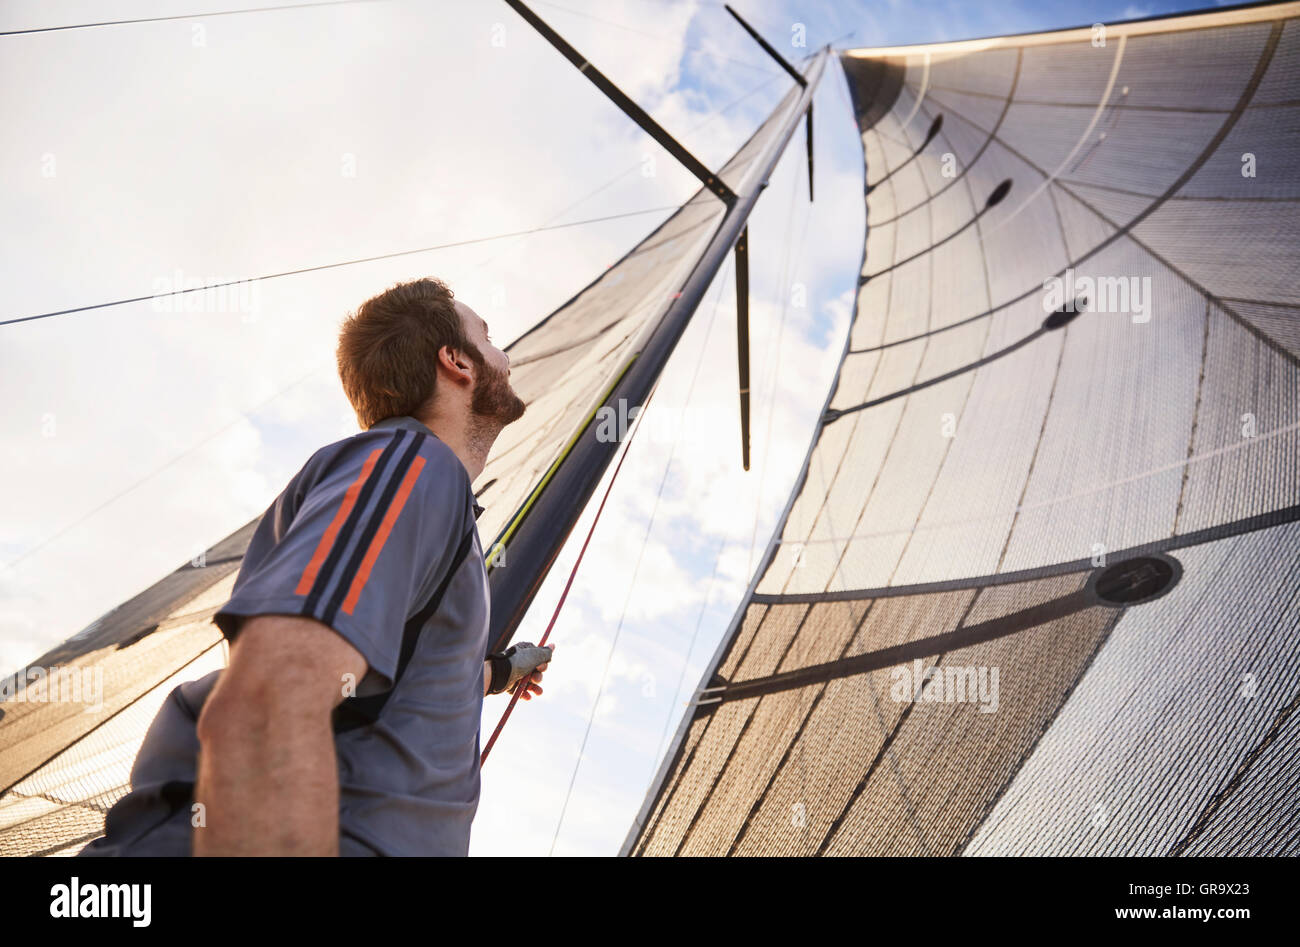 Man sailing looking up at sail Stock Photo